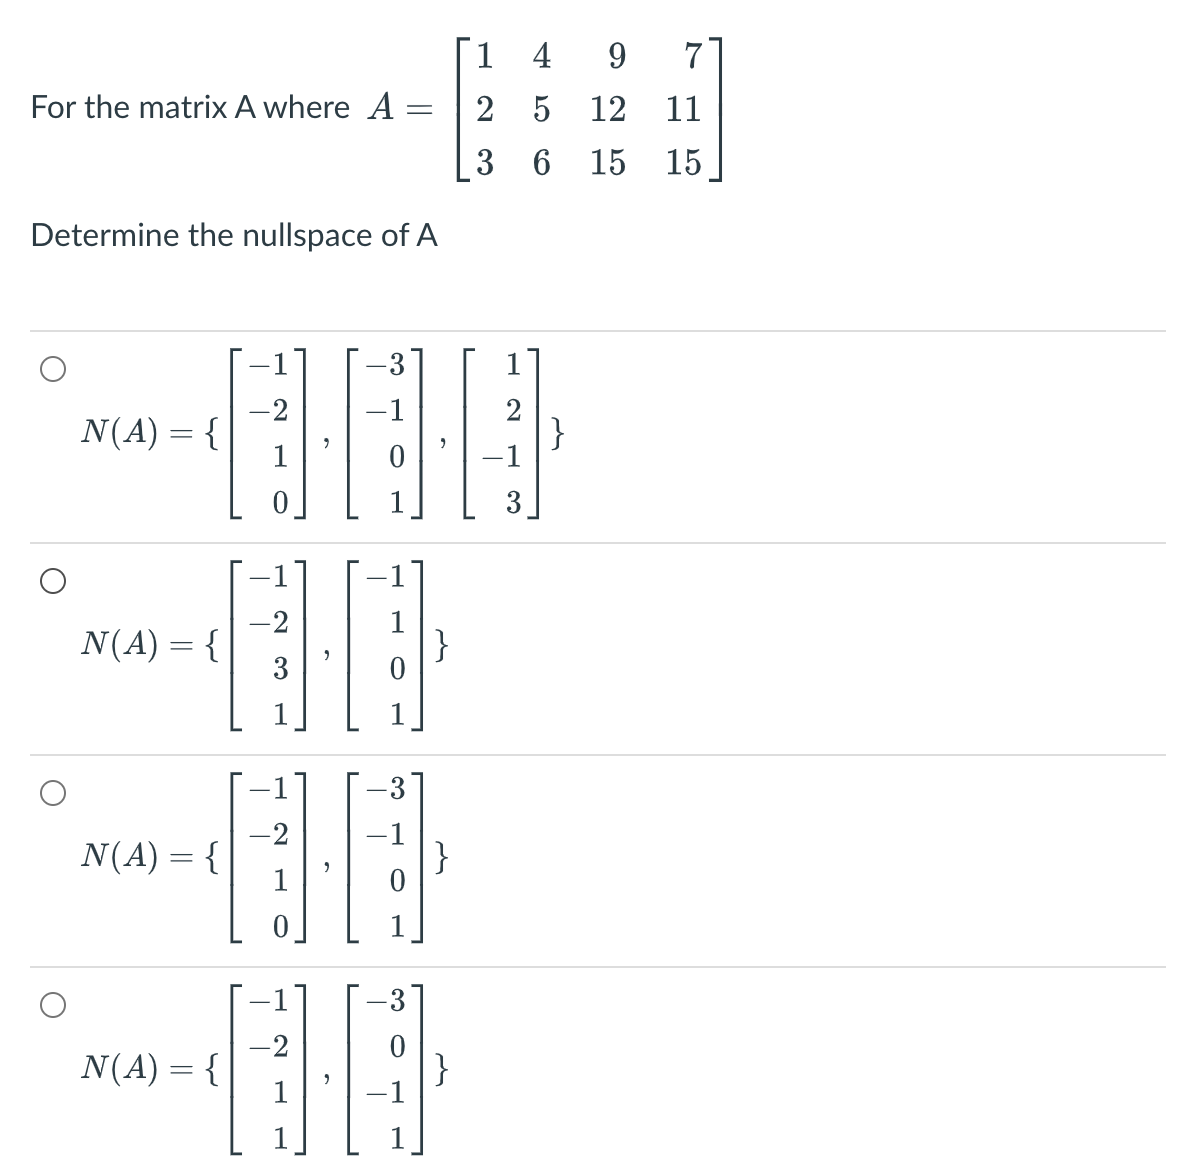 1 4
7
For the matrix A where A
2 5 12
11
3 6 15
15
Determine the nullspace of A
3
-2
N(A) = {
1
-1
-2
N(A) = {
1
}
3
-2
N(A) = {
-1
}
-2
N(A) = {
